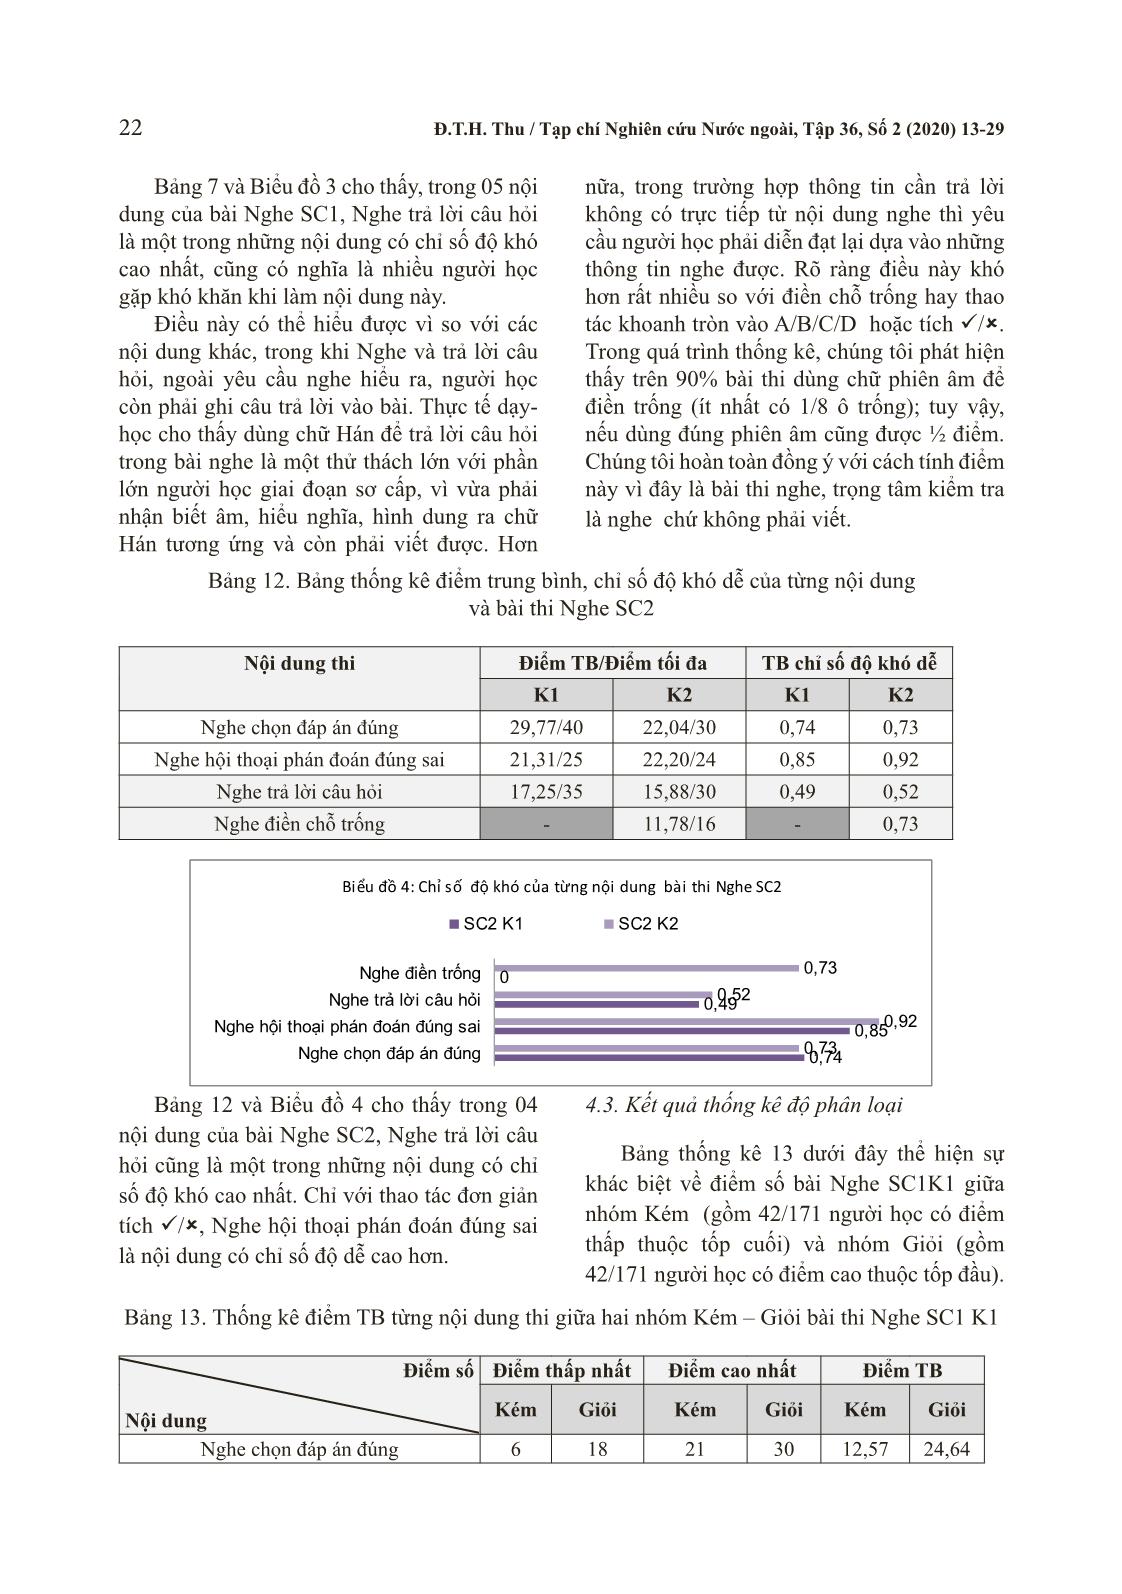 Phân tích kết quả bài thi nghe tiếng Trung Quốc trang 10